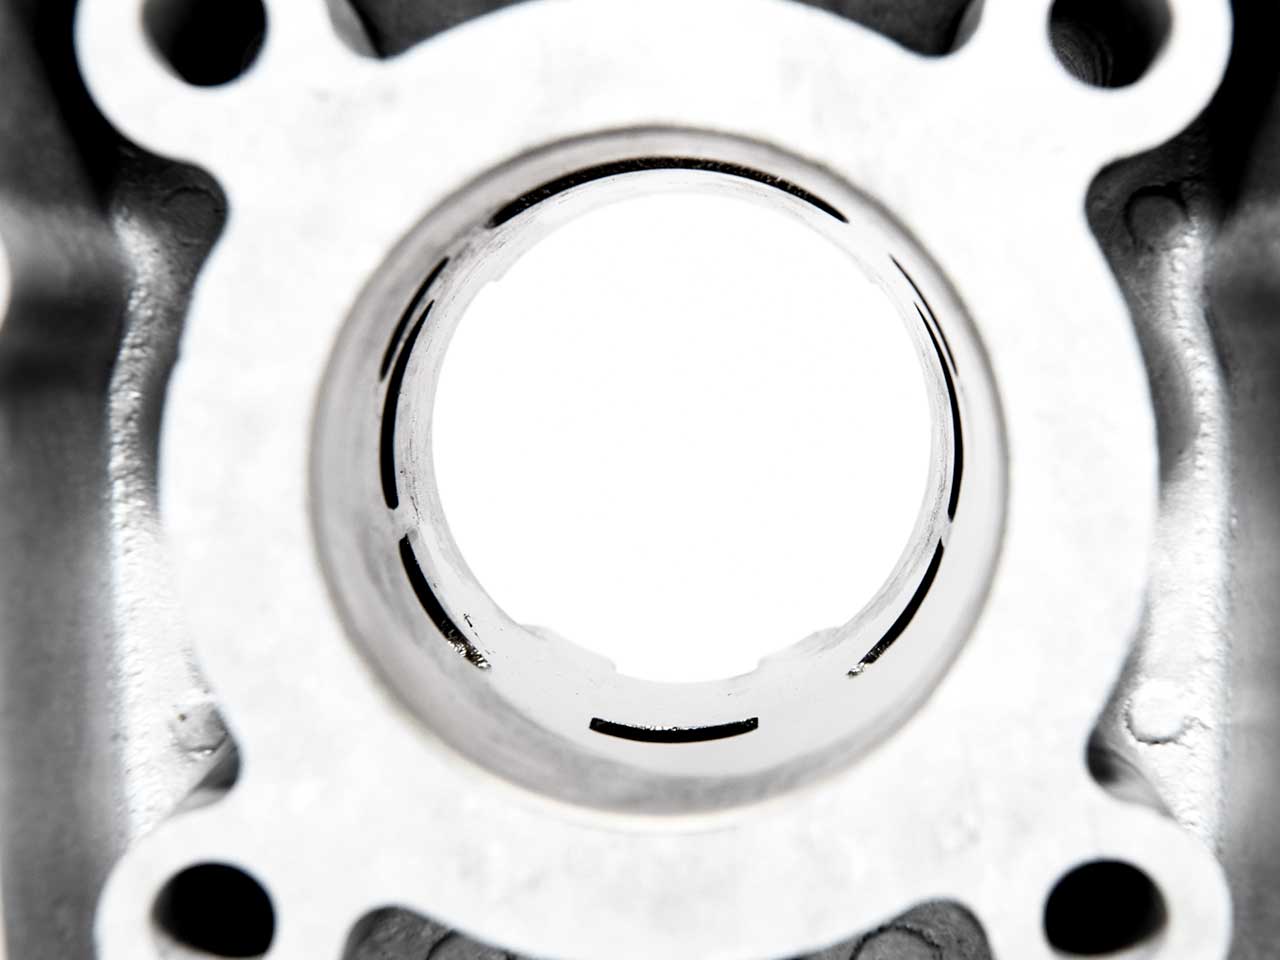 BARIKIT Tuning Zylinder von innen Fotografiert überströmter sowie Auslass sichtbar.